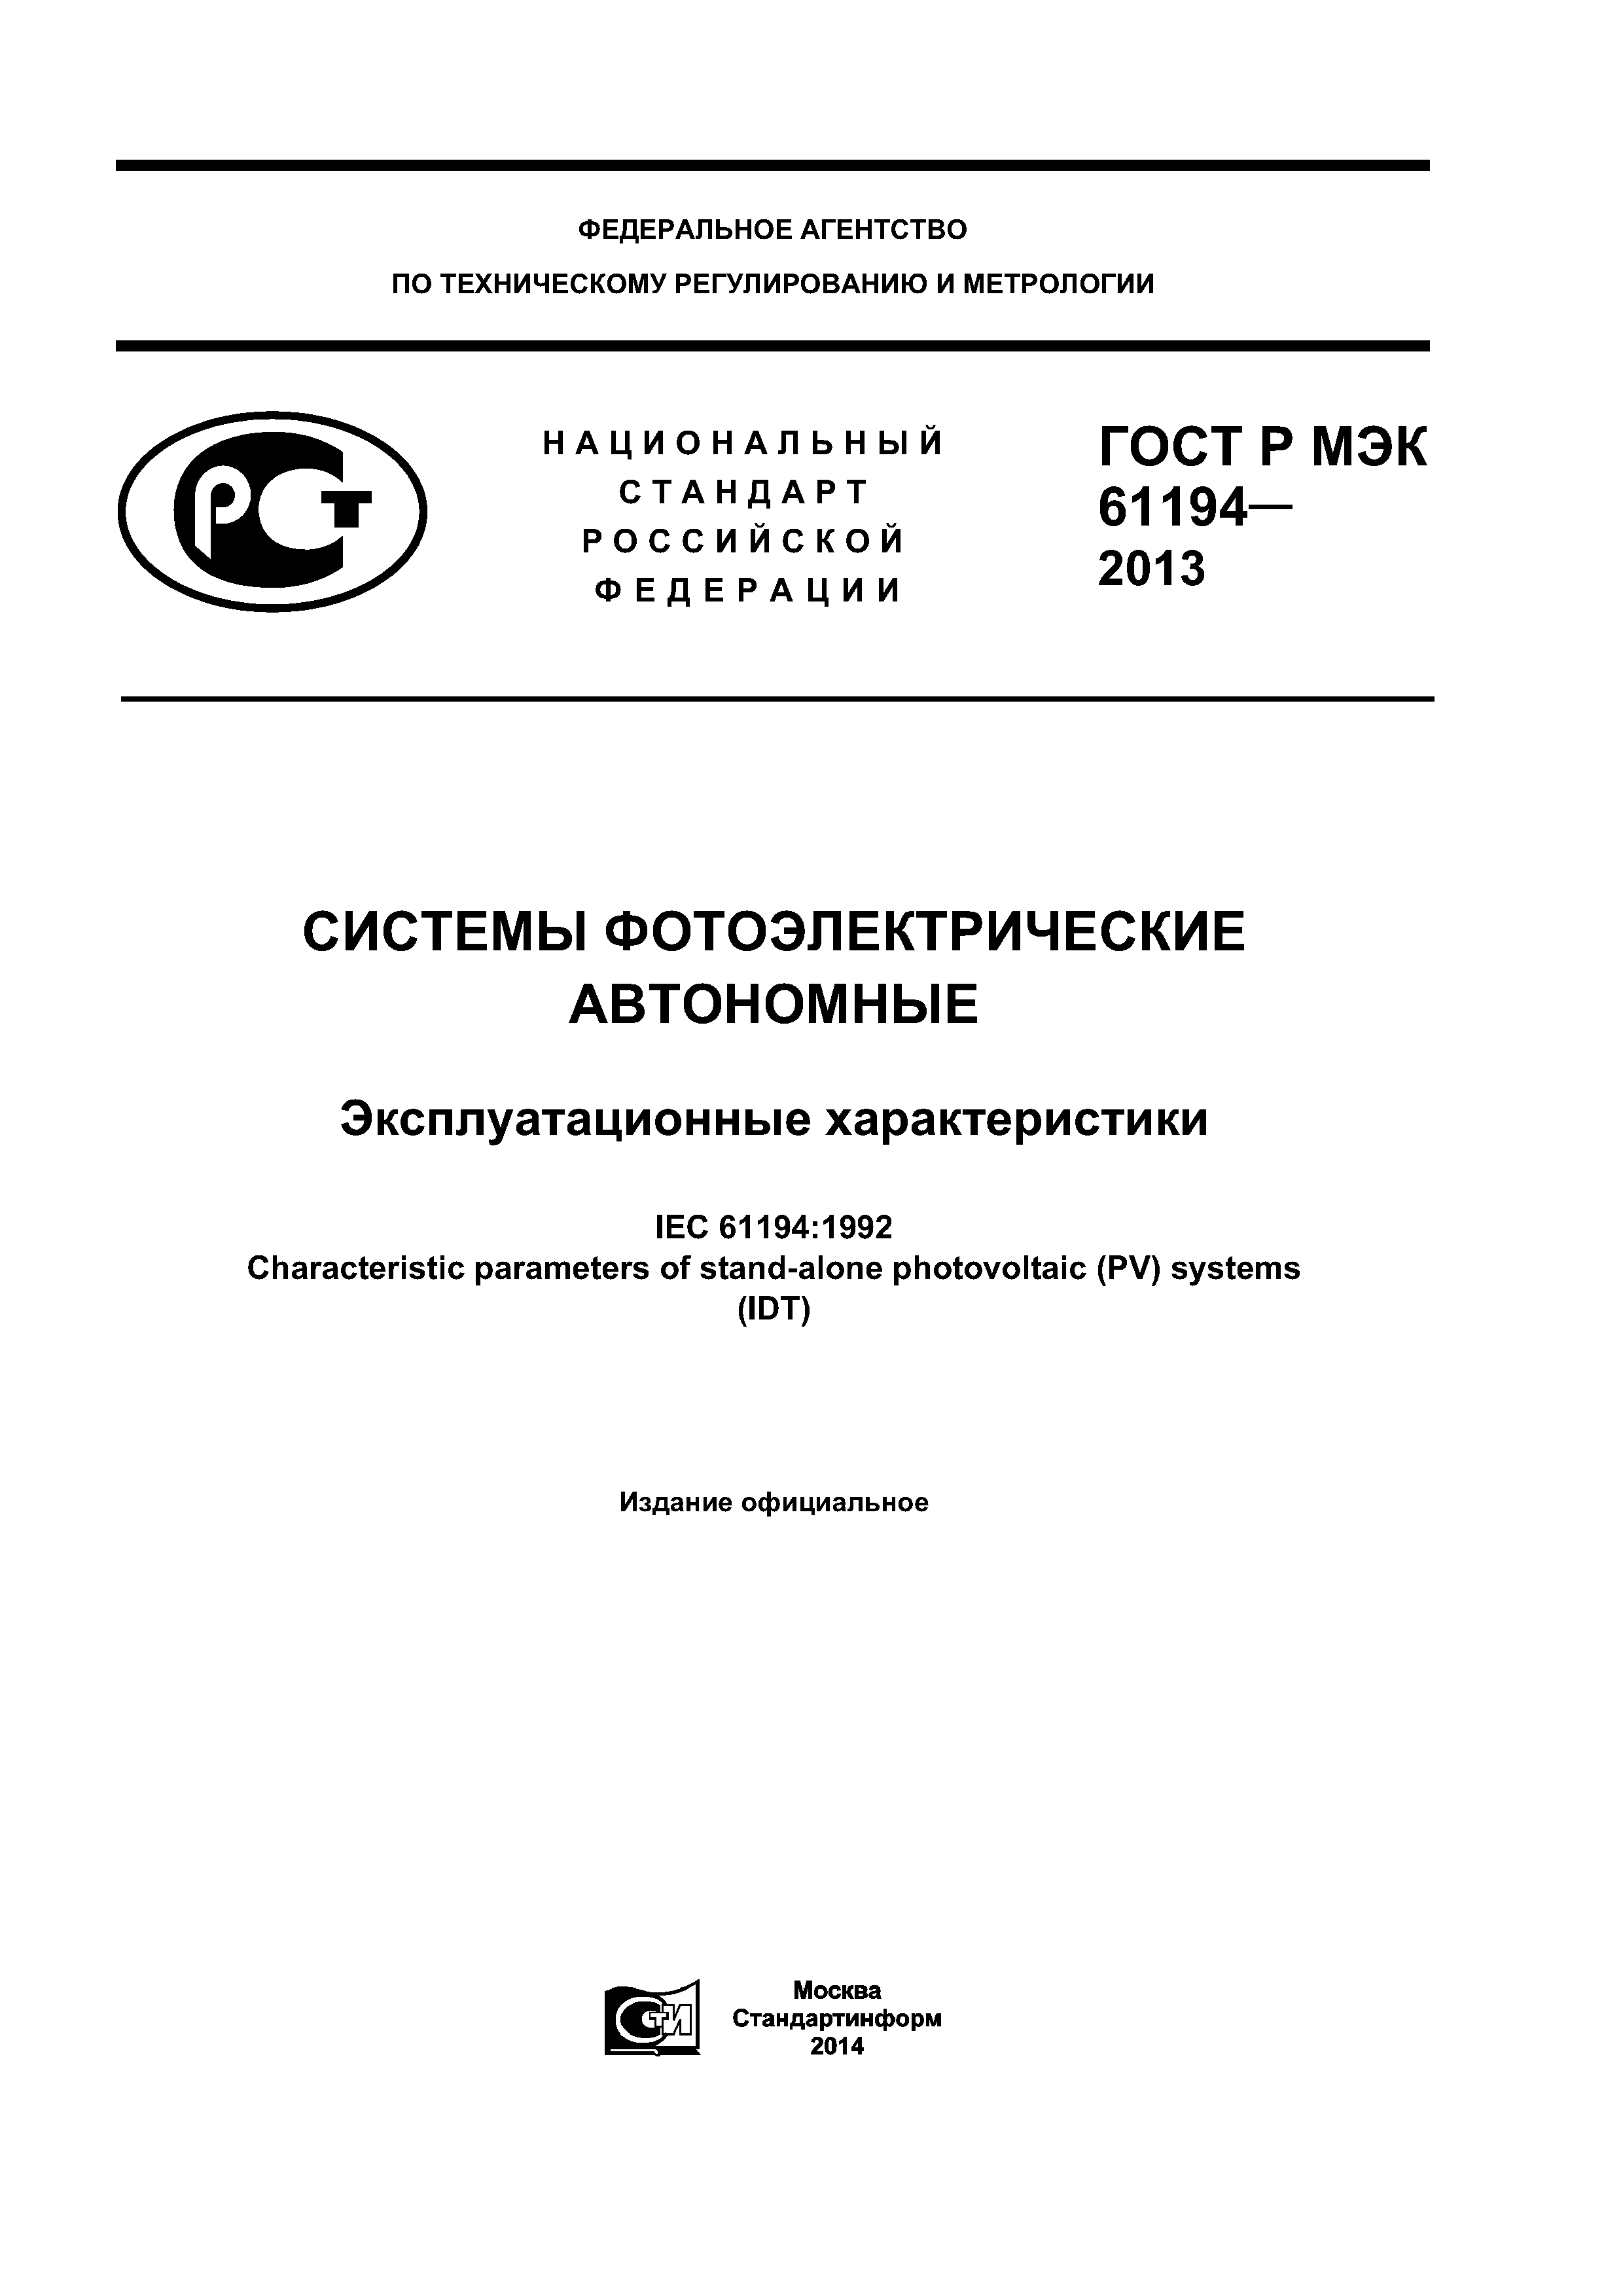 ГОСТ Р МЭК 61194-2013